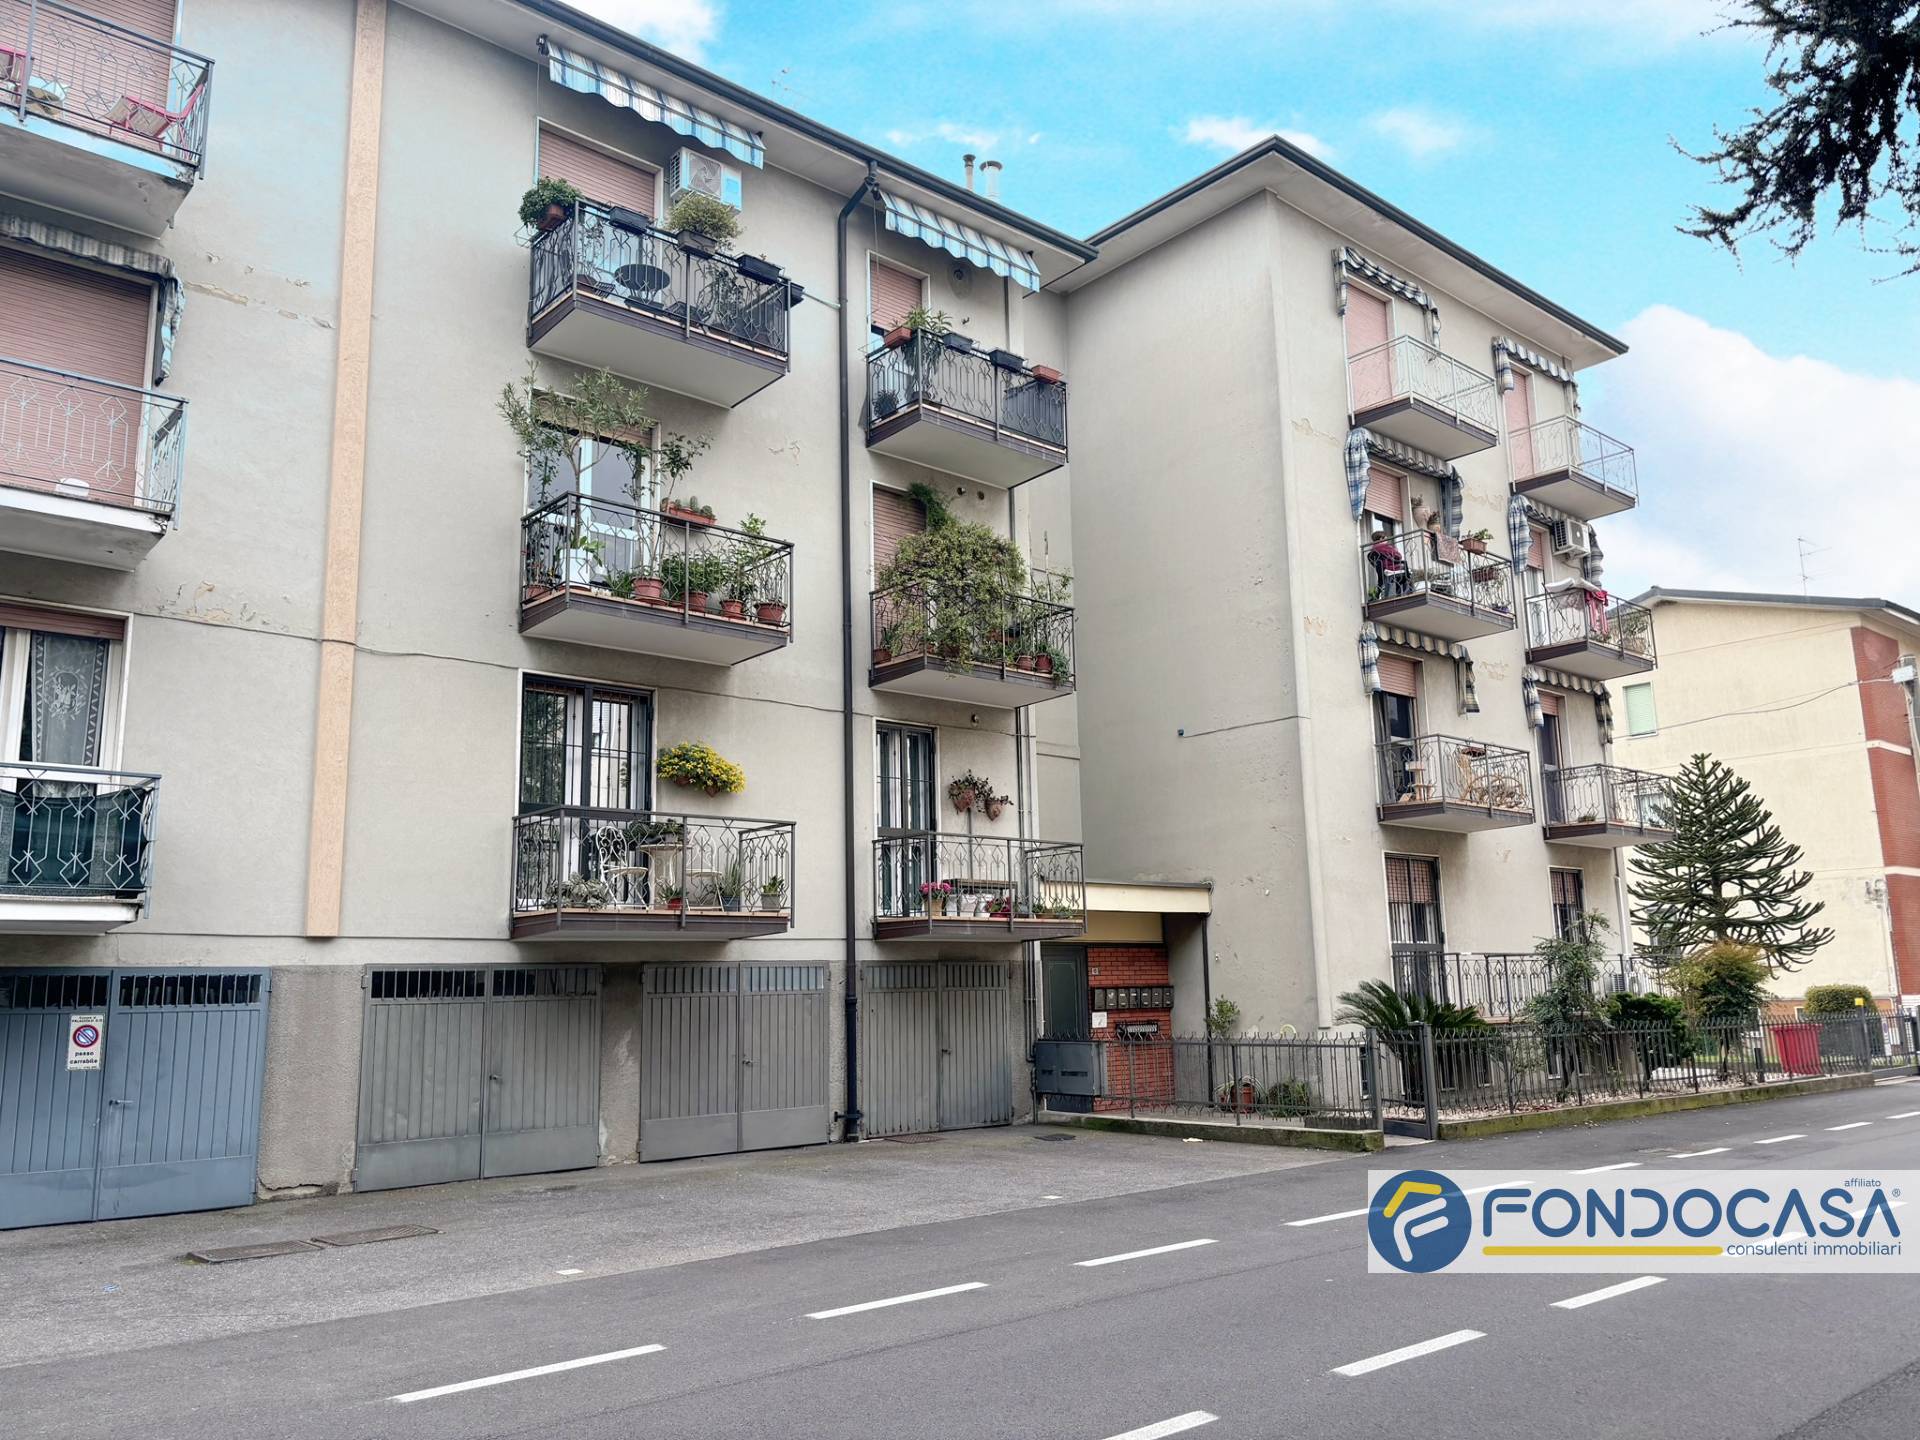 Appartamento in vendita a Palazzolo sull'Oglio, 3 locali, Trattative riservate | PortaleAgenzieImmobiliari.it